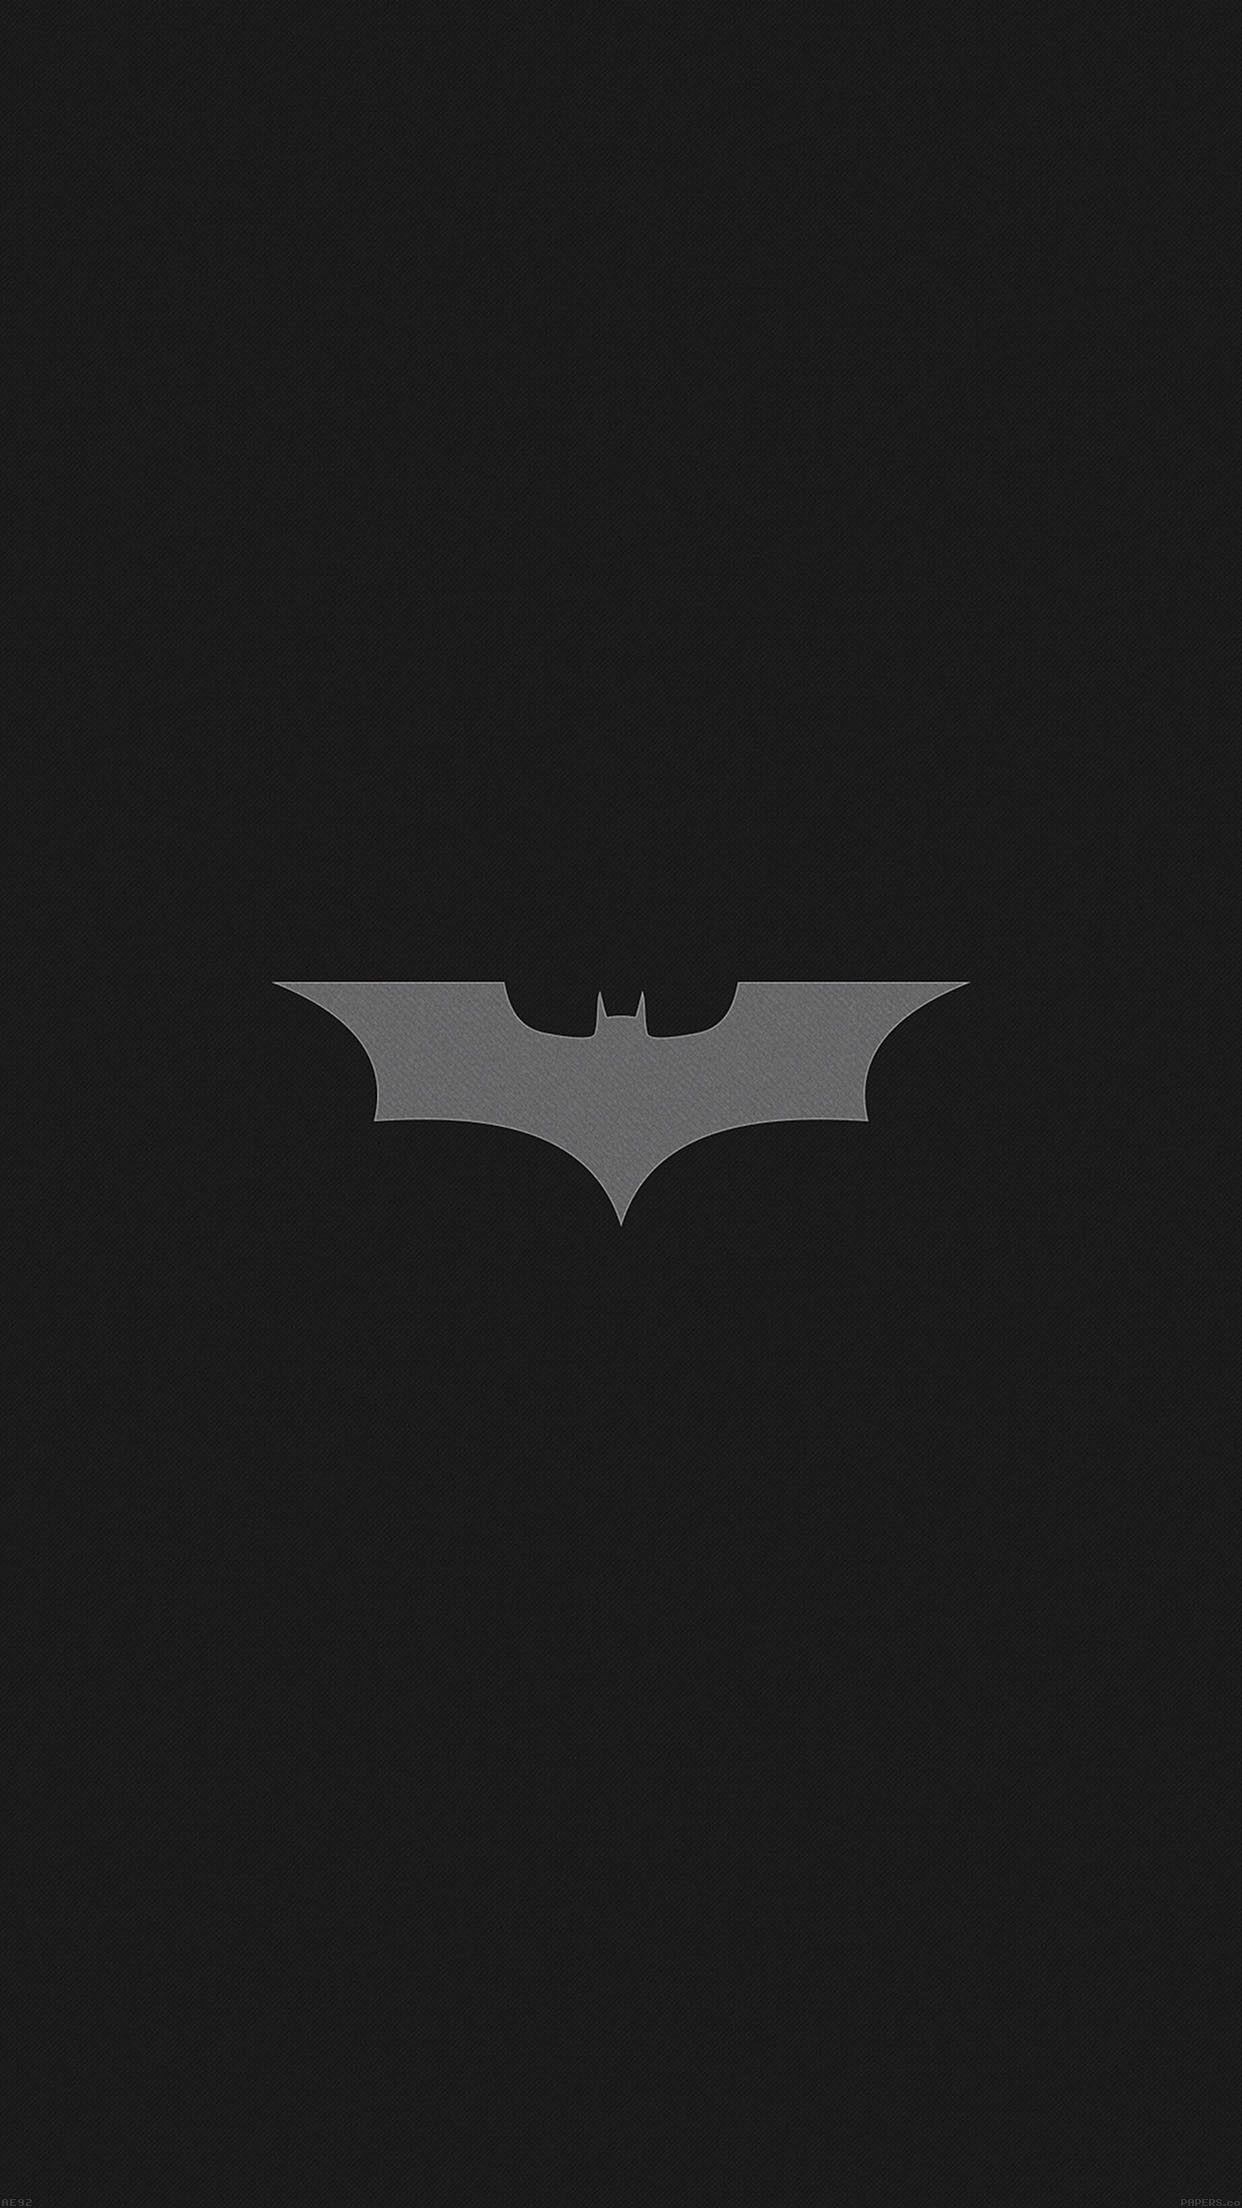 Broken Batman Logo - Batman Symbol Wallpaper ·①